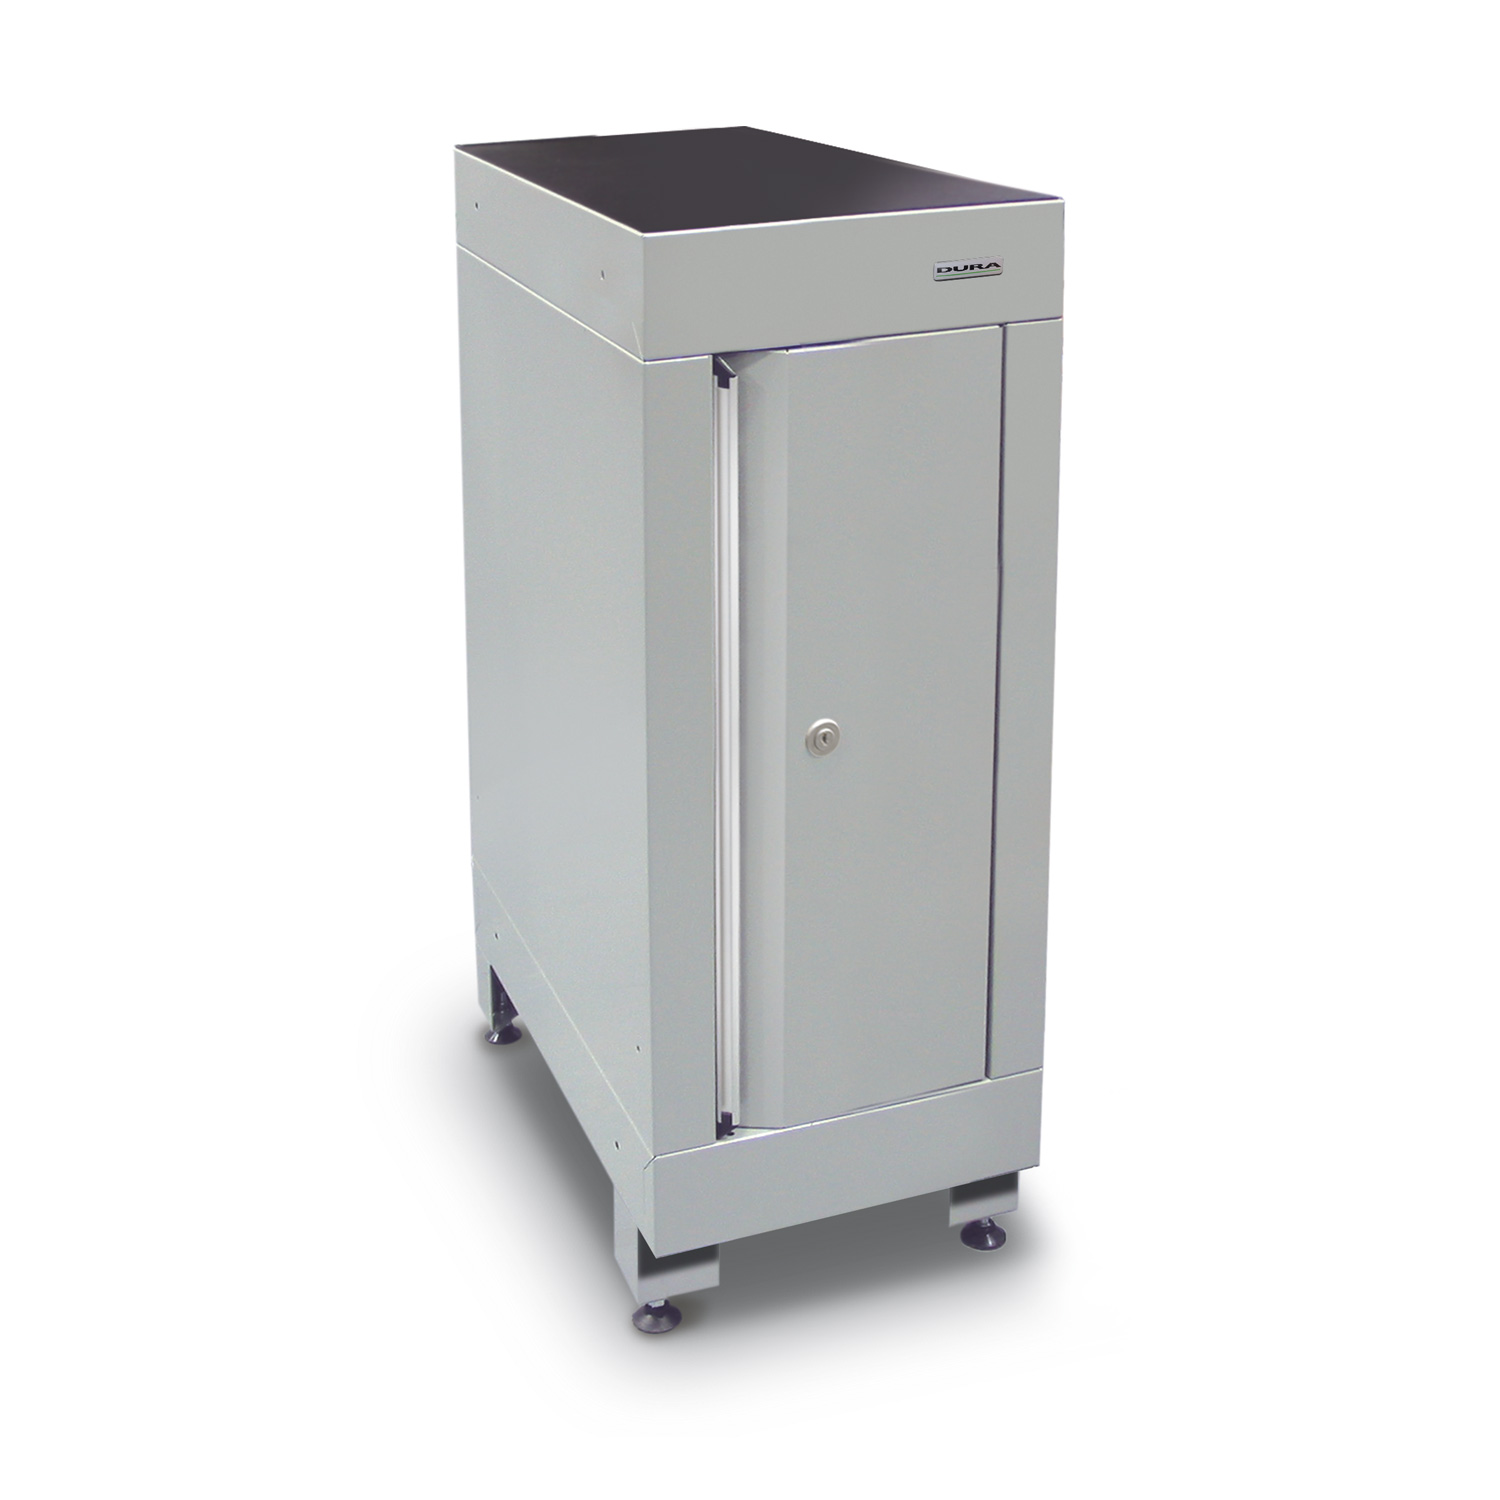 300mm wide base cabinet (door/feet)